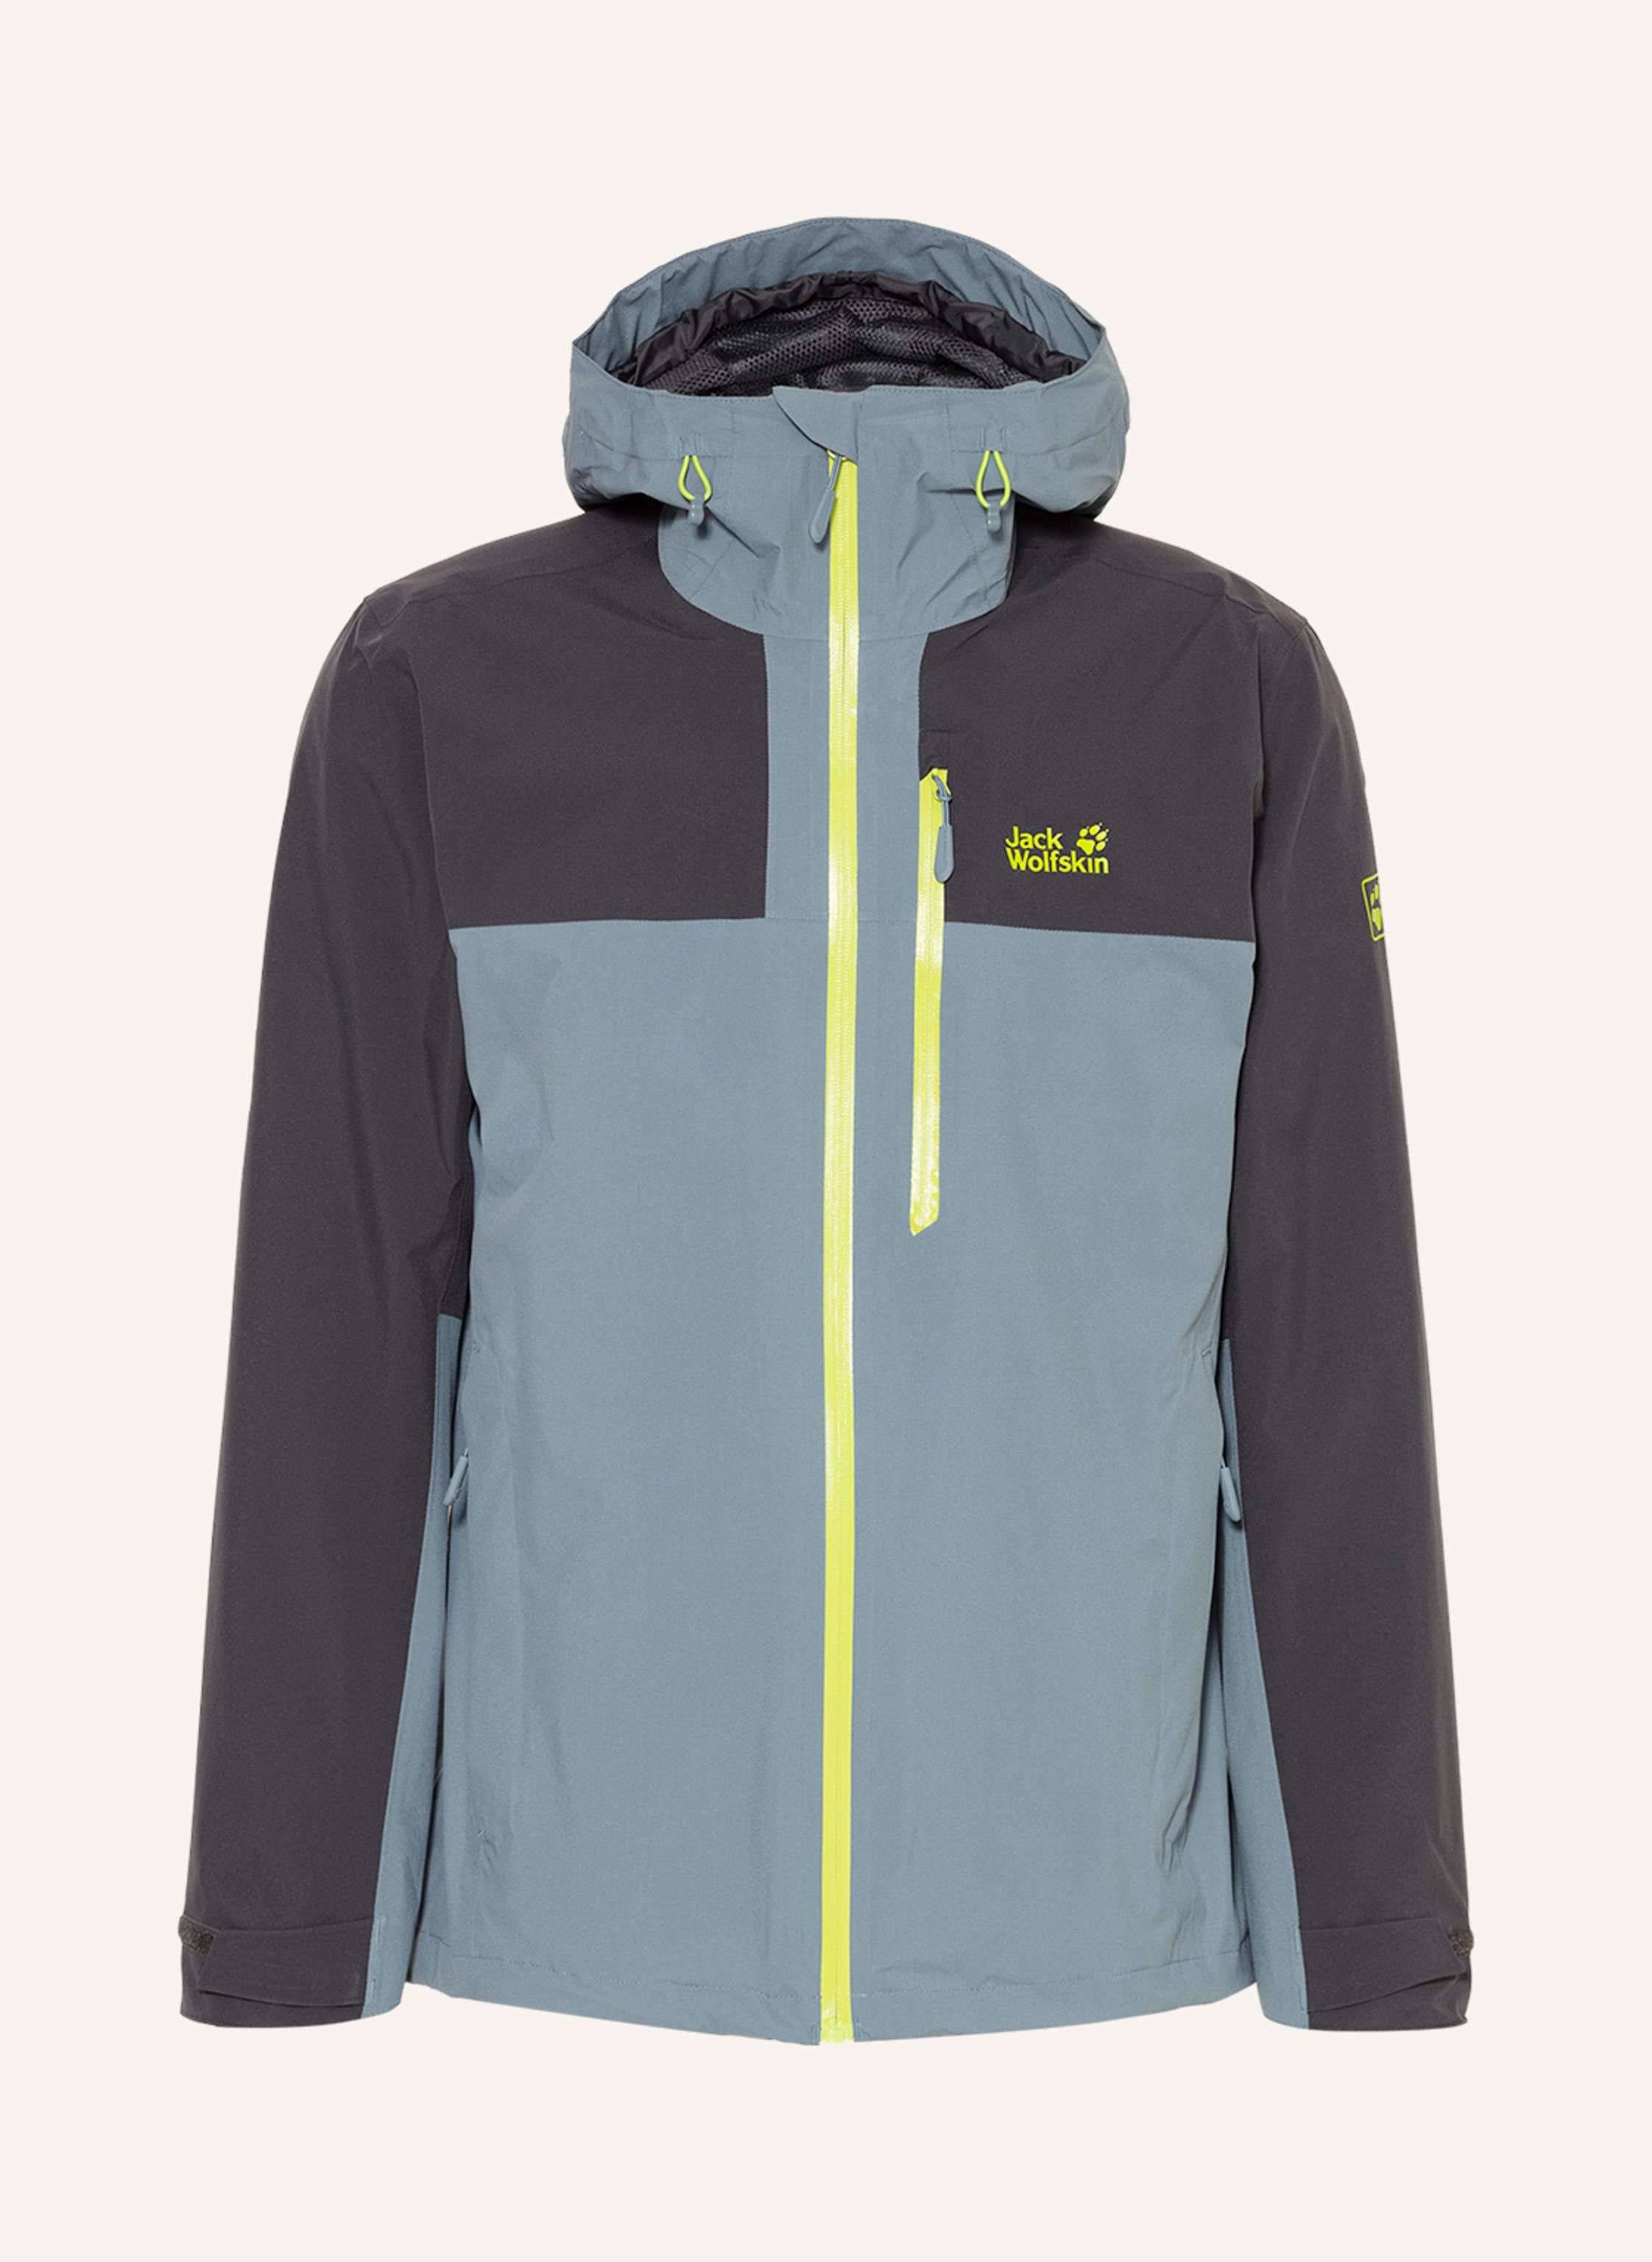 Jack Wolfskin Outdoor jacket GO HIKE in dark gray/ blue/ neon green | Breuninger